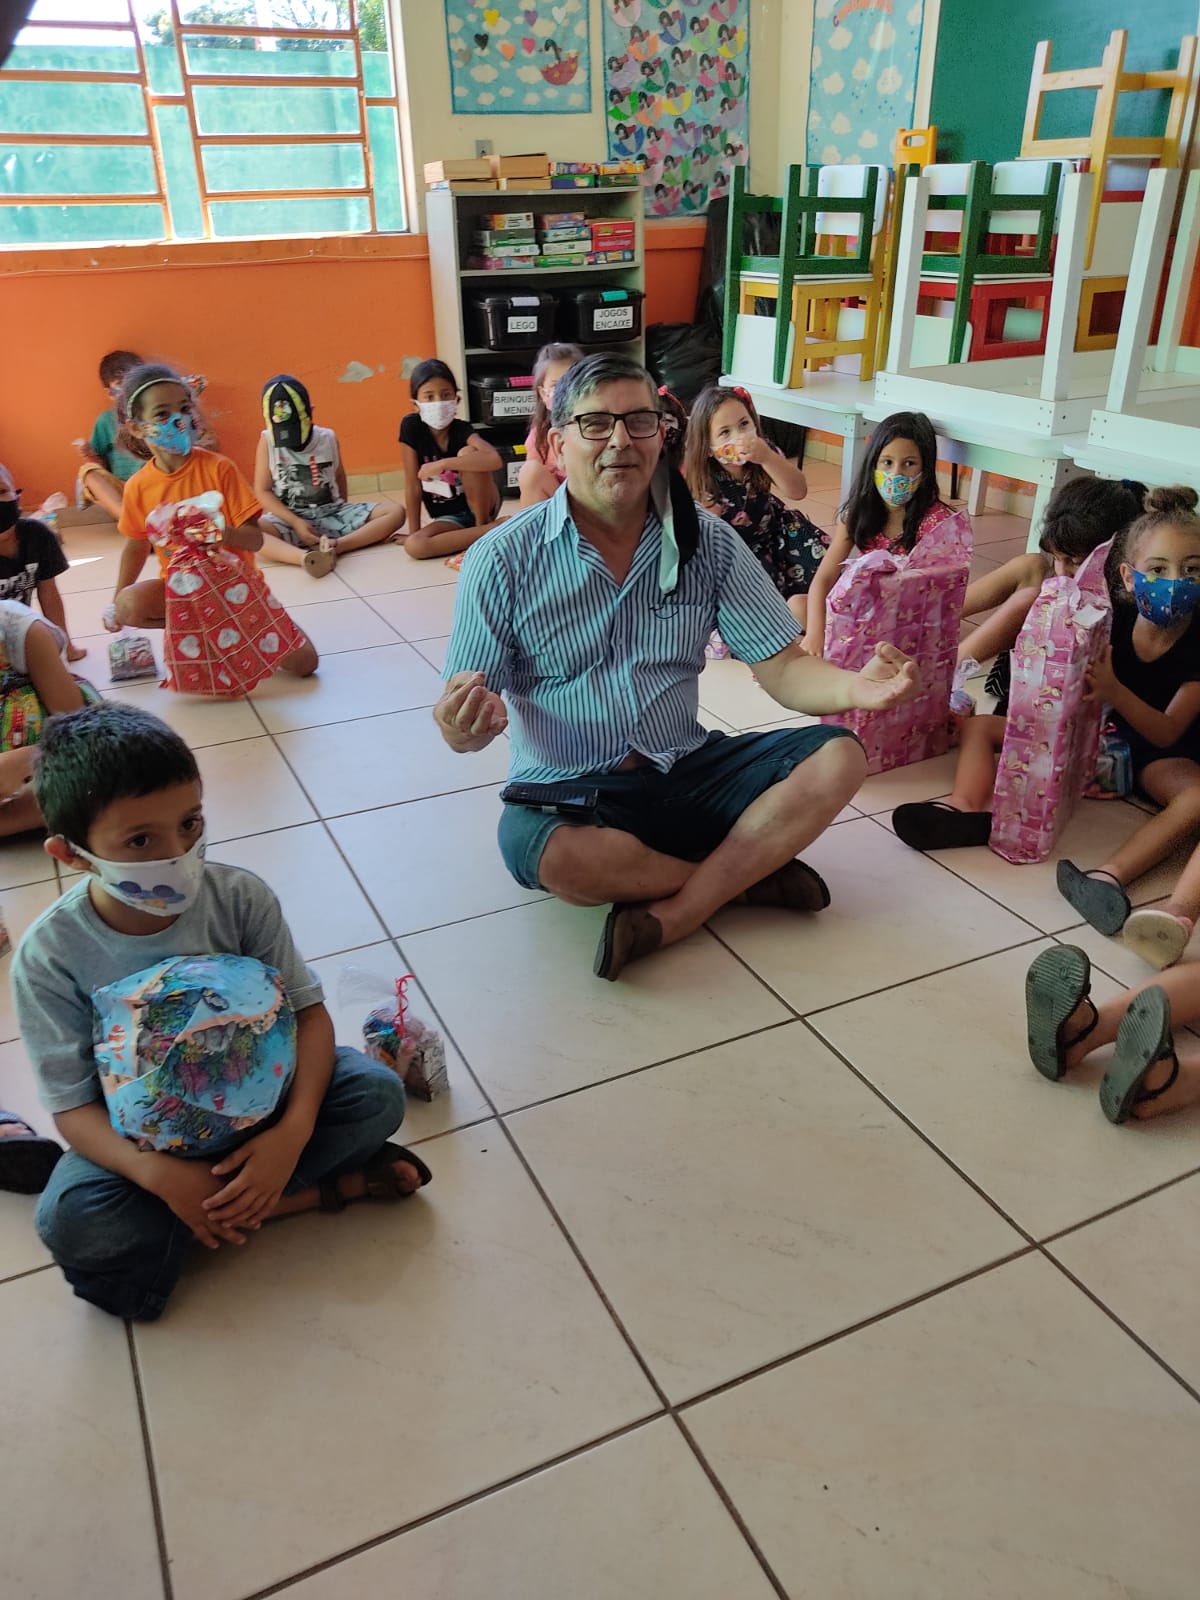 Cepal levou alegria e solidariedade às crianças